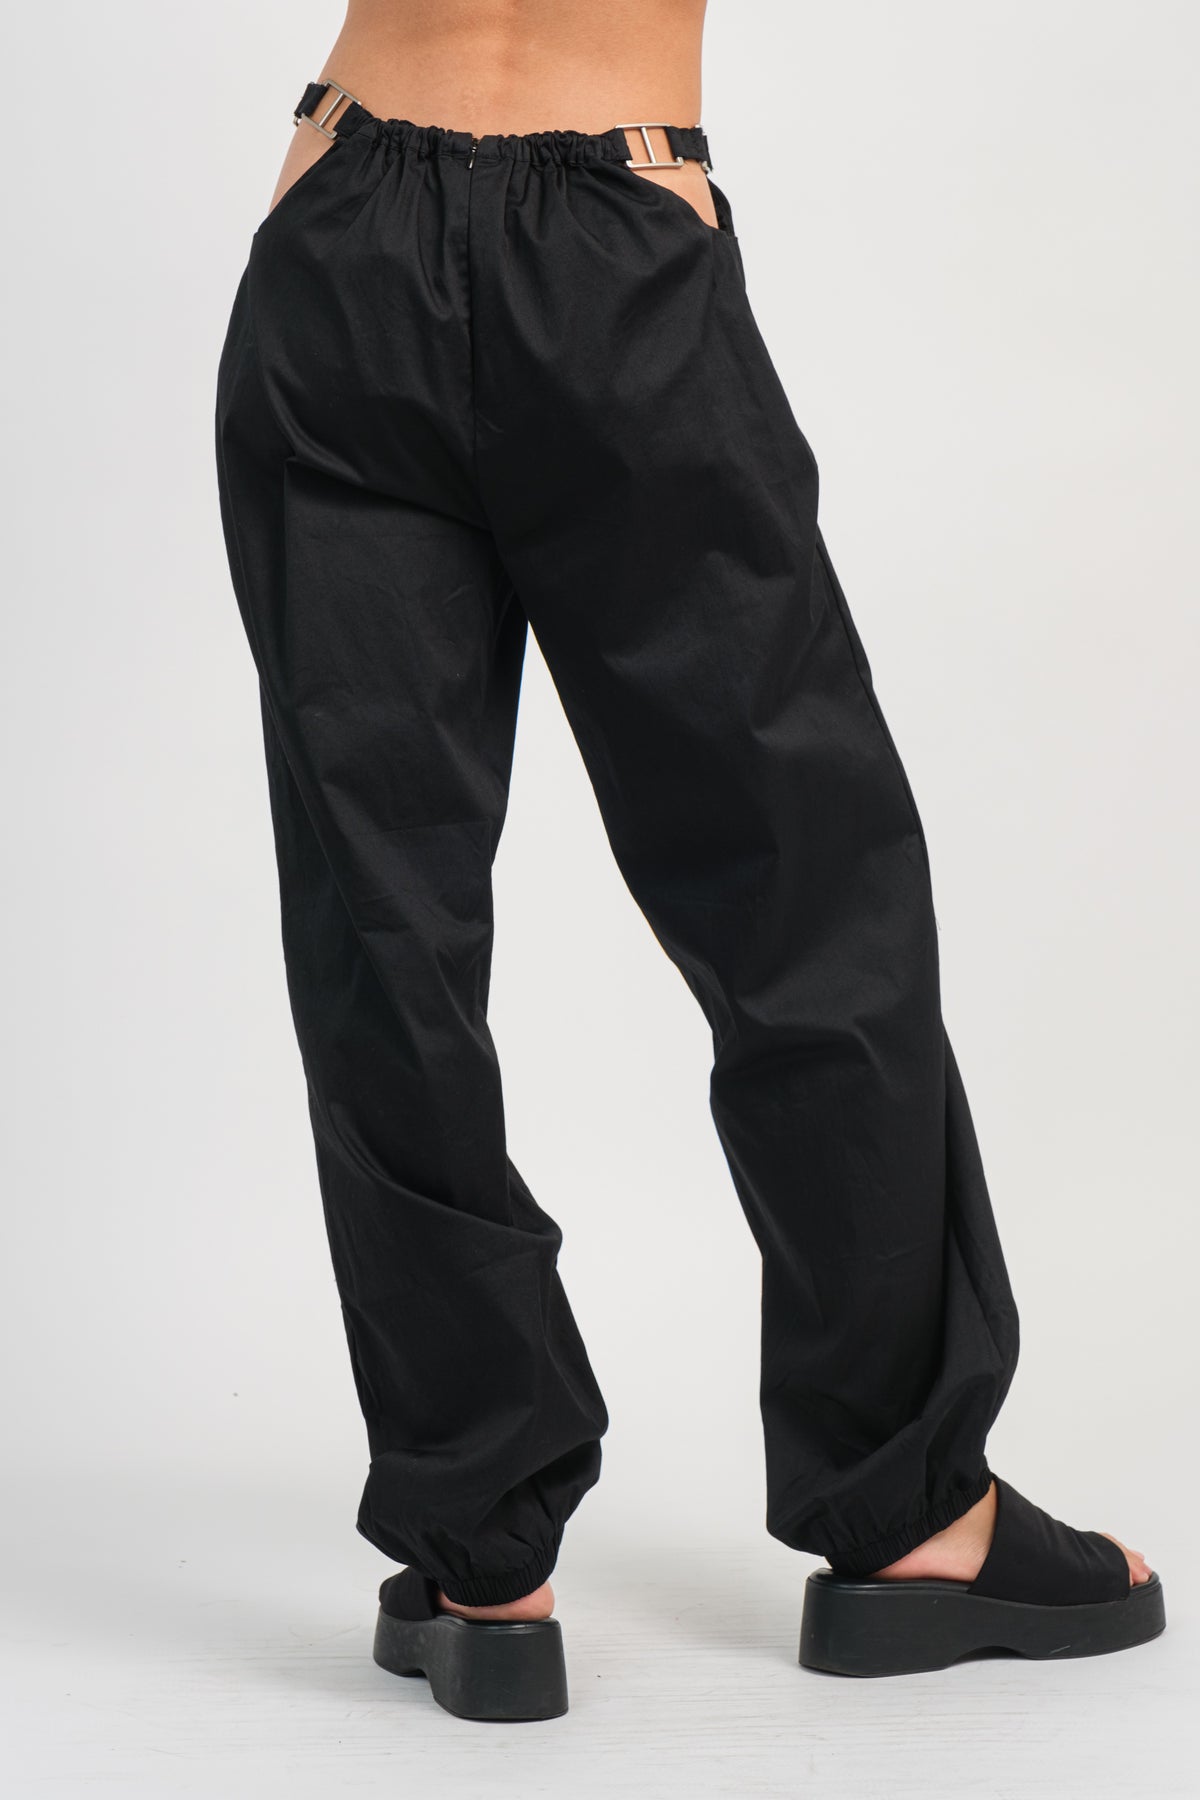 2491 | Side Cutouts Wide Pants $12.45 Unit